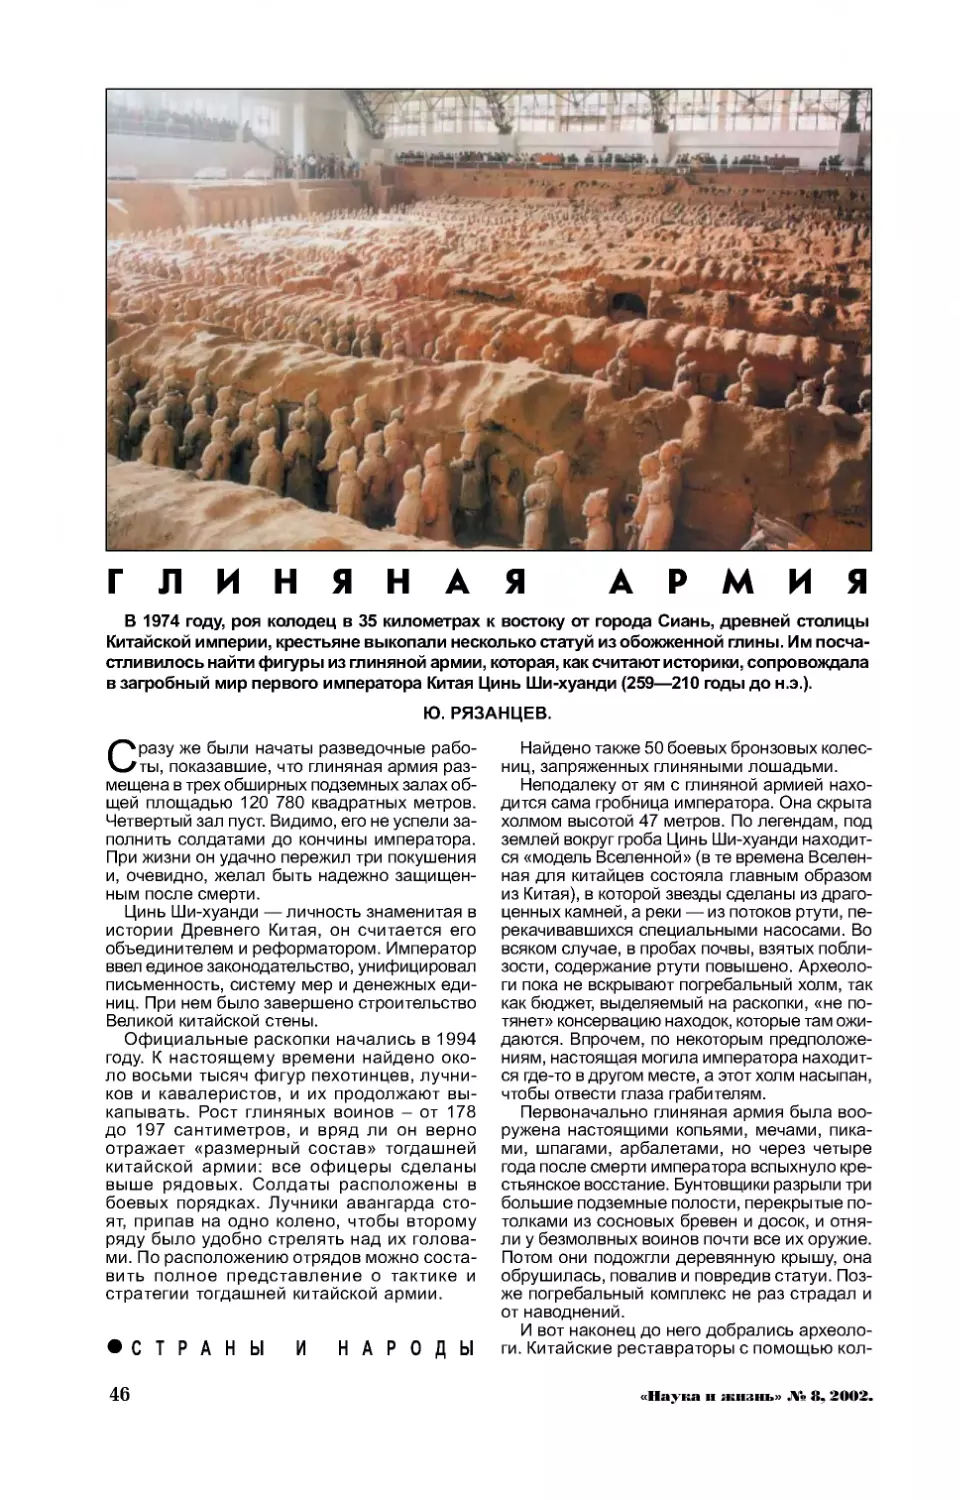 Ю. РЯЗАНЦЕВ — Глиняная армия